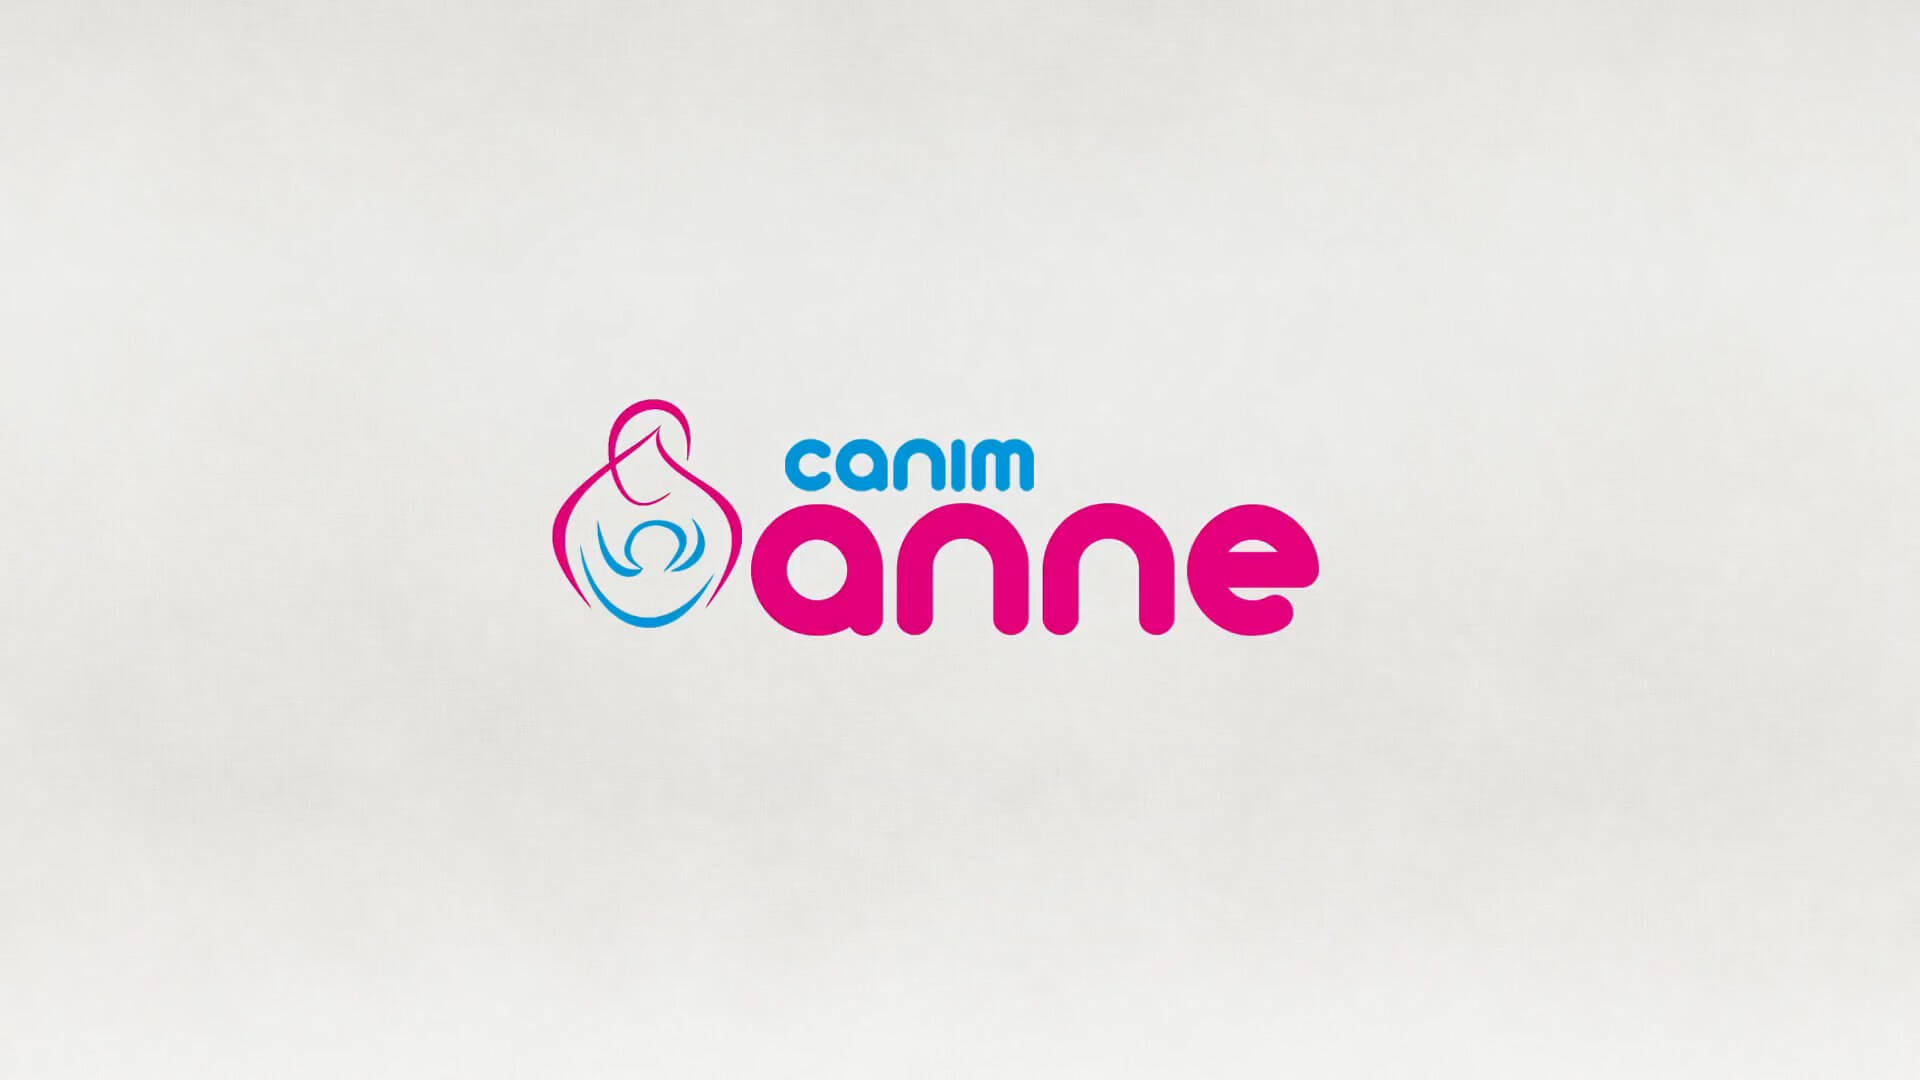 Canımanne9 - Canimanne.com Animasyon Filmi